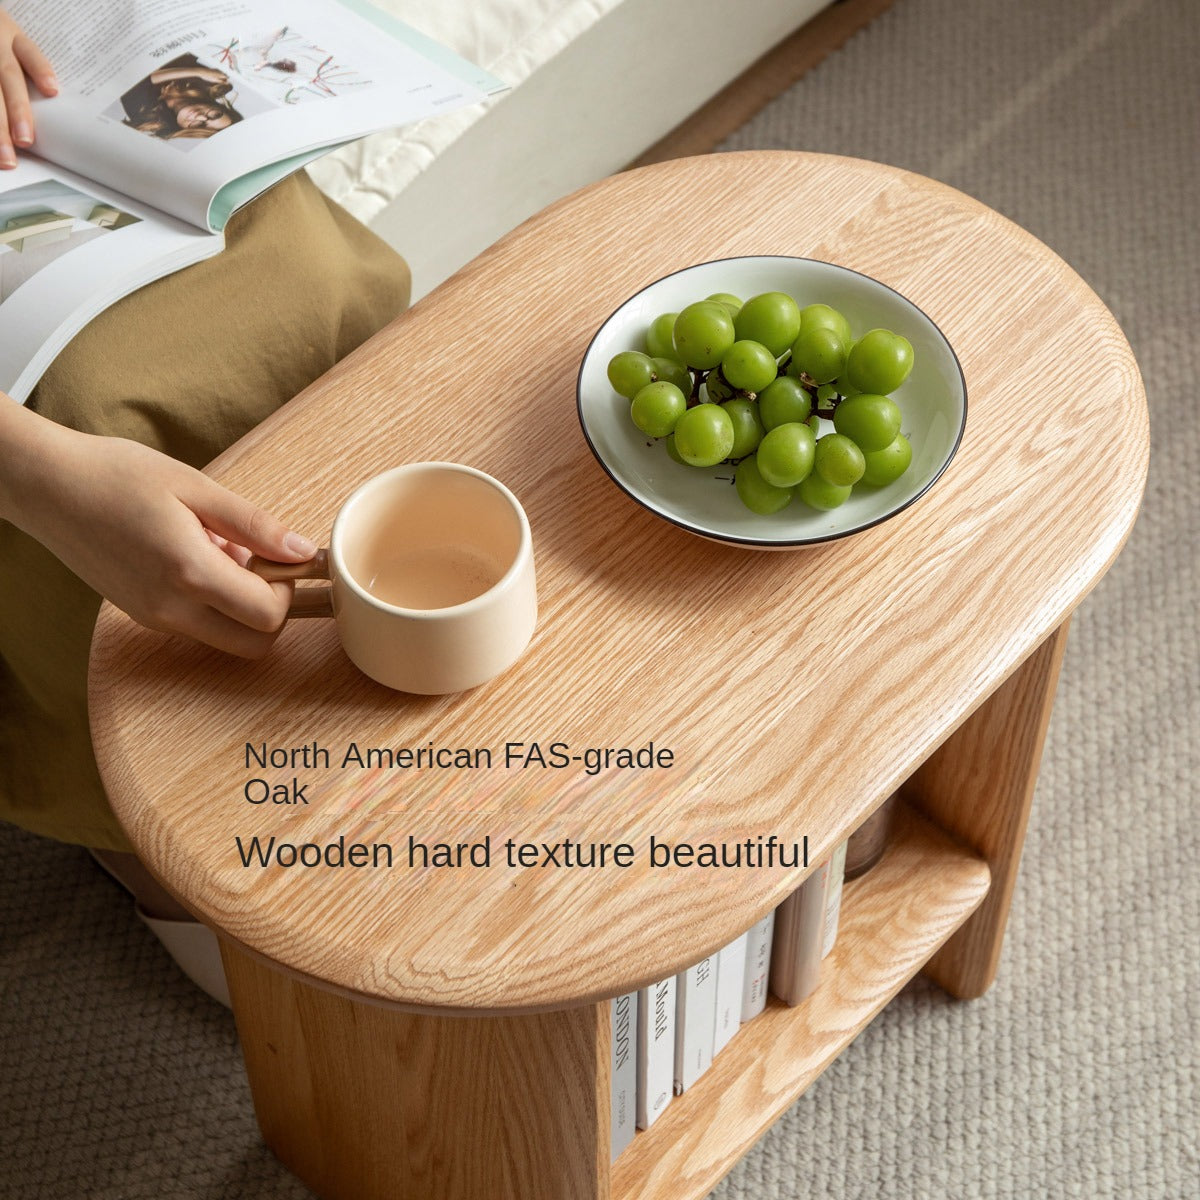 Oak Solid Wood Side Table Modern Simple ,Bedside Cabinet"